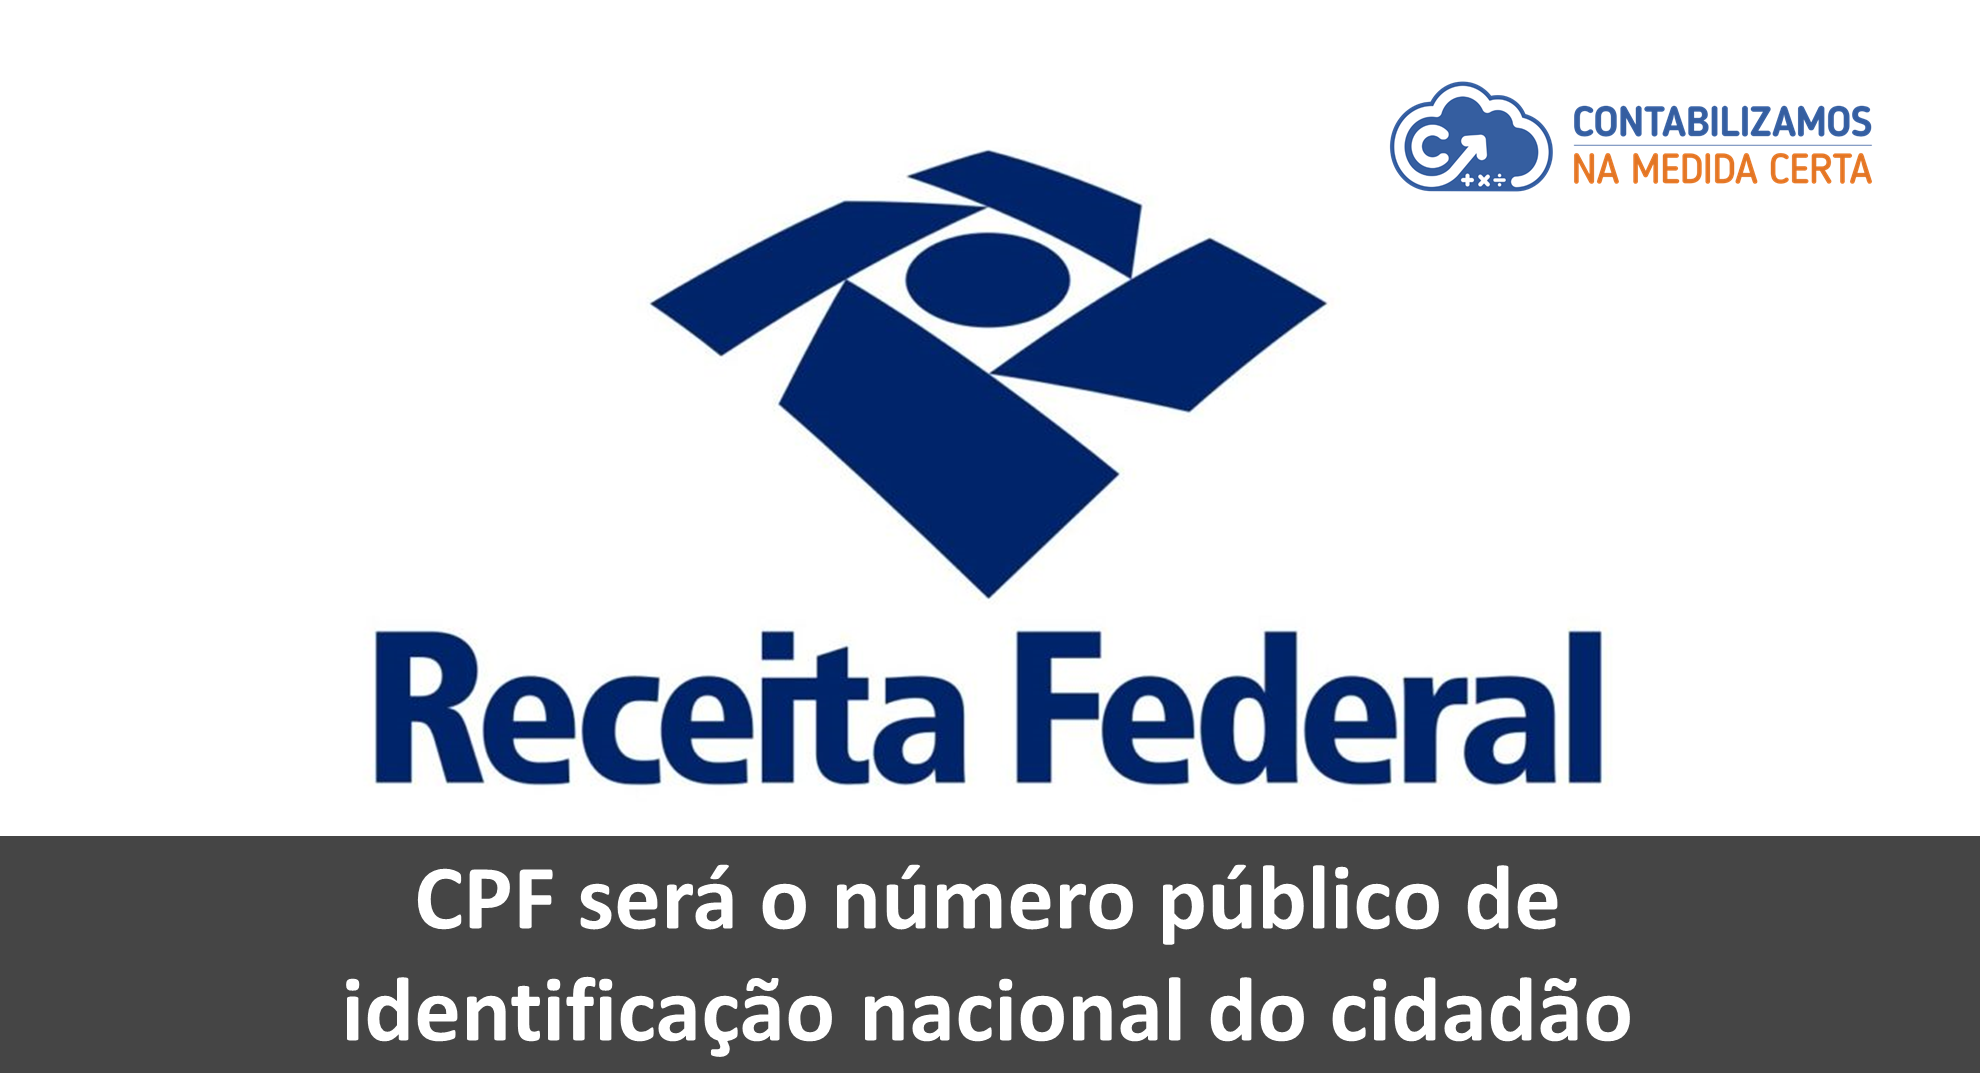 CPF Será O Número Público De Identificação Nacional Do Cidadão